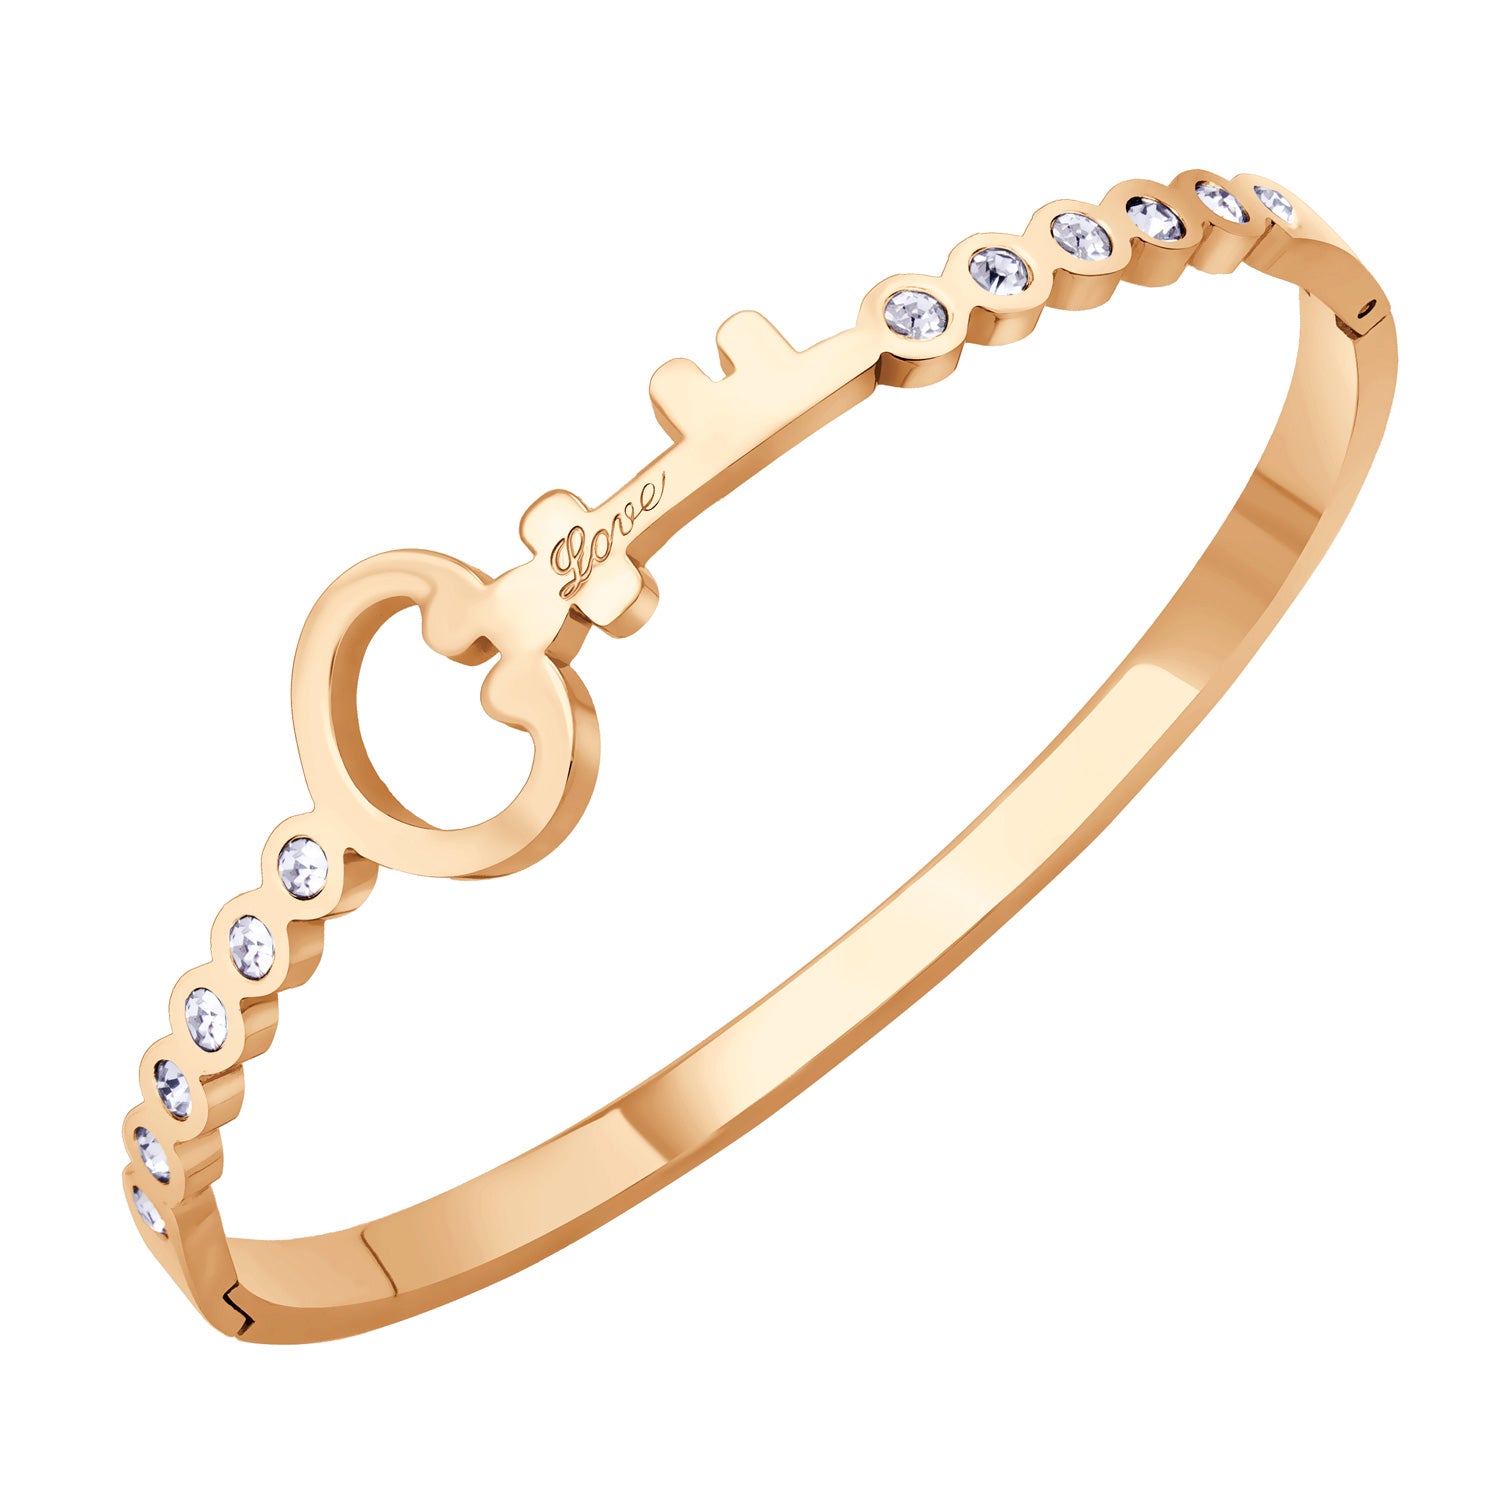 Men's Bracelet - Monaco Chain CAVO Pavé Lock